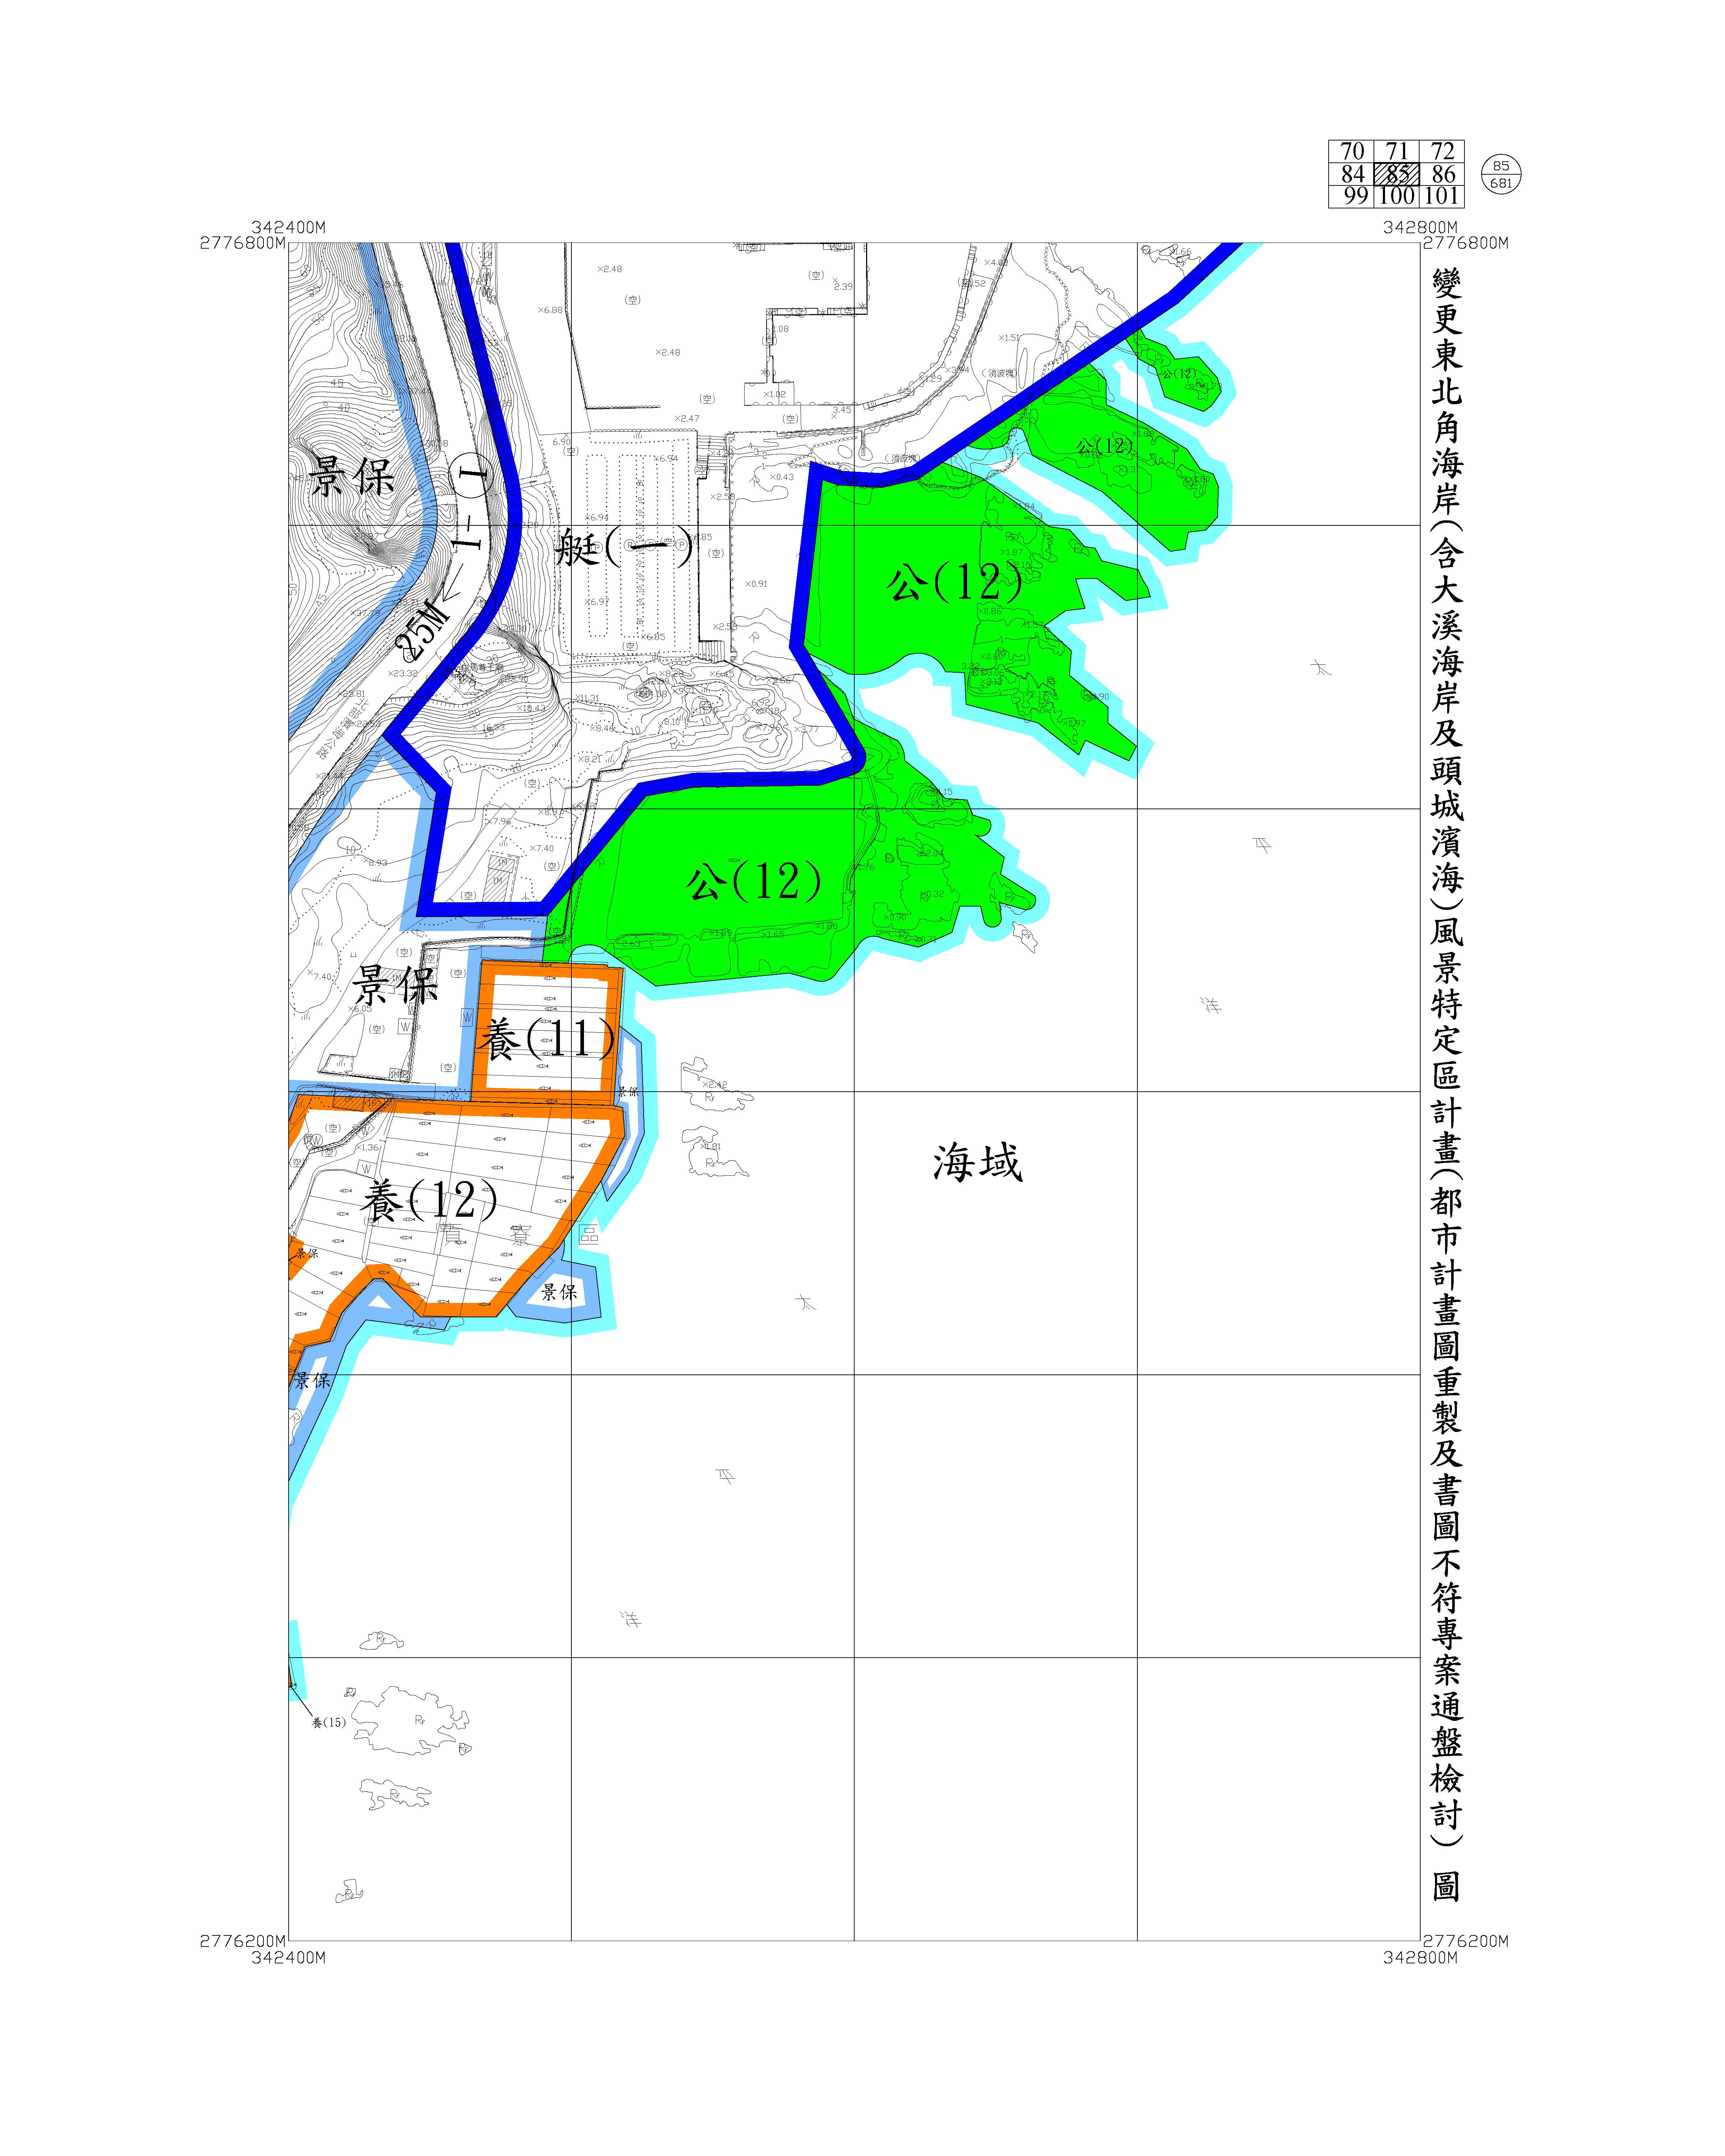 含大溪海岸及頭城濱海都市計畫圖重製及書圖不符專案通盤檢討圖資94